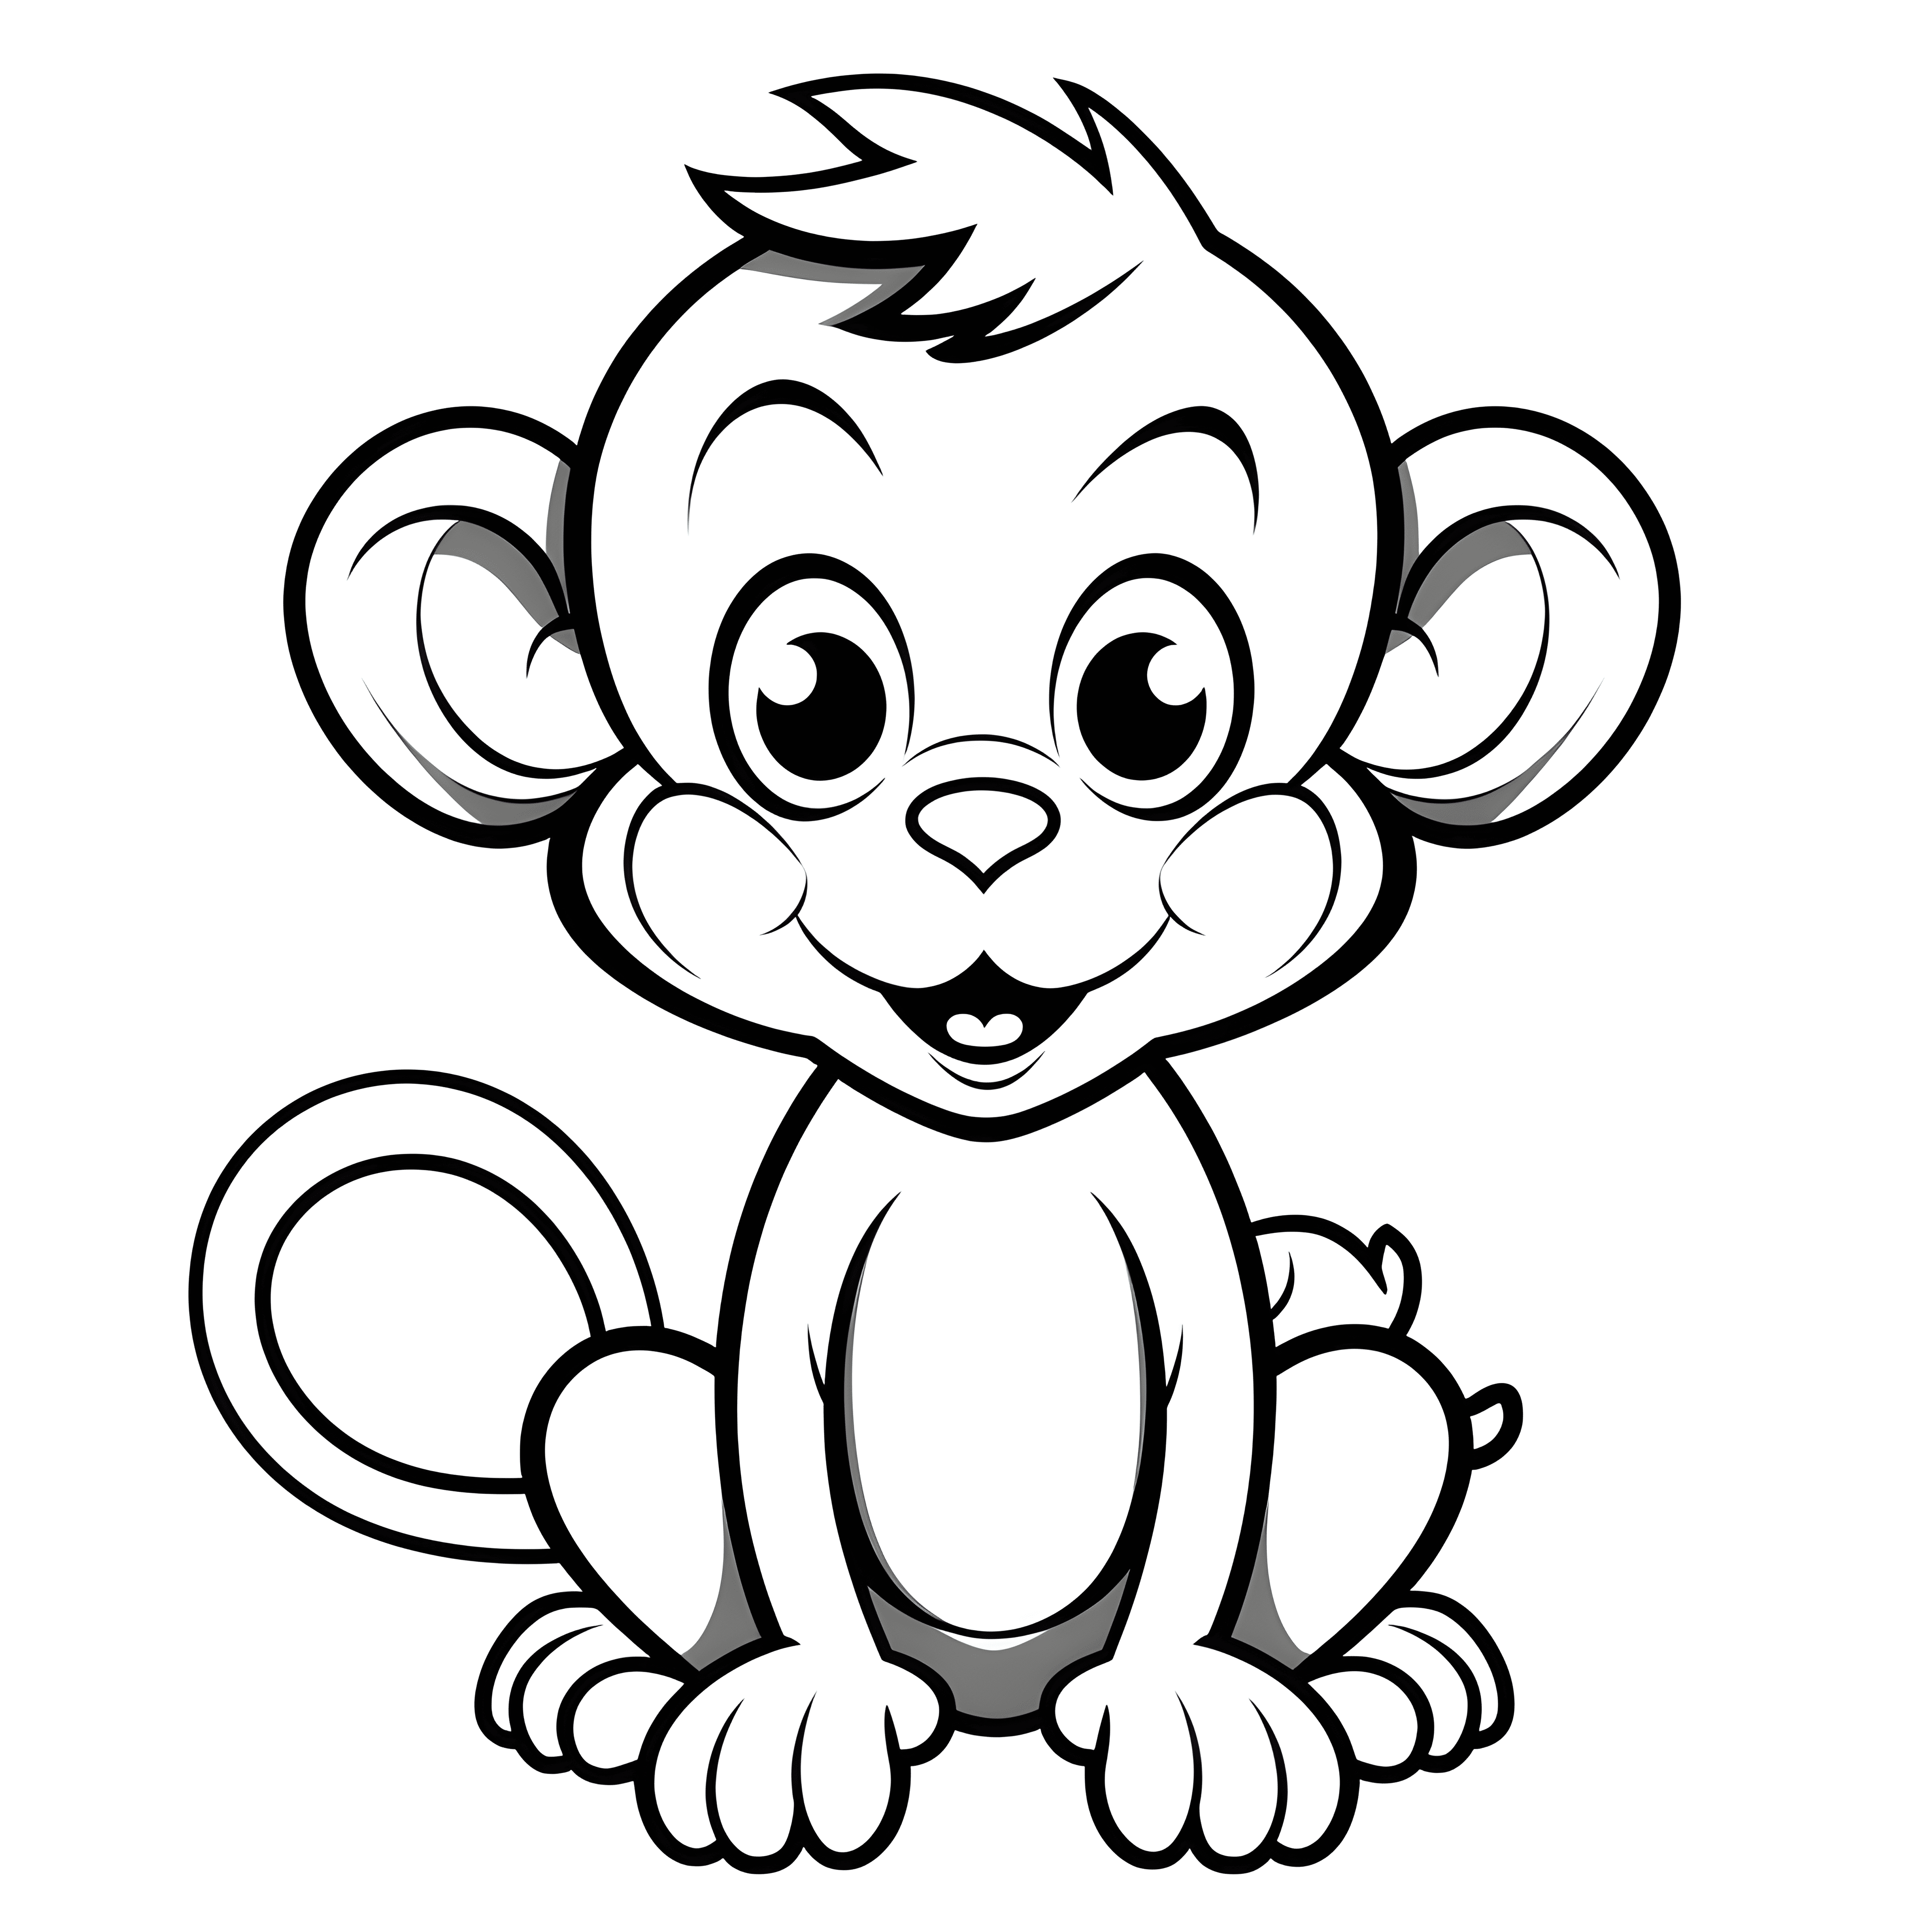 Eine sehr einfache Cartoon-Affe